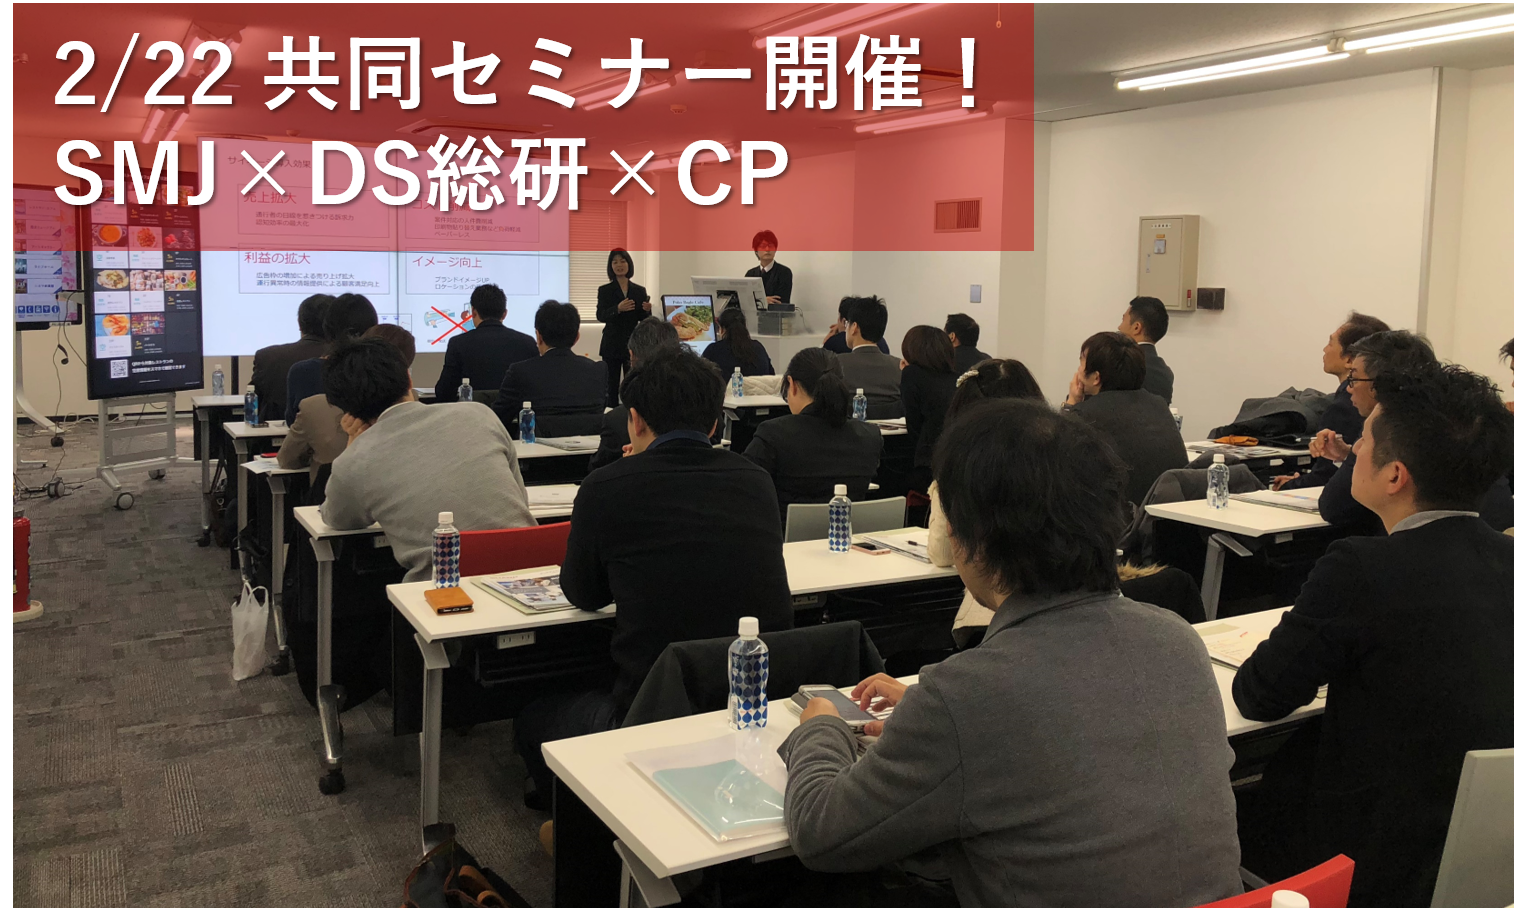 2月22日(金)開催、第2回シャープマーケティングジャパン × クラウドポイント × デジタルサイネージ総研 3社共同セミナー を大阪にて開催いたしました！